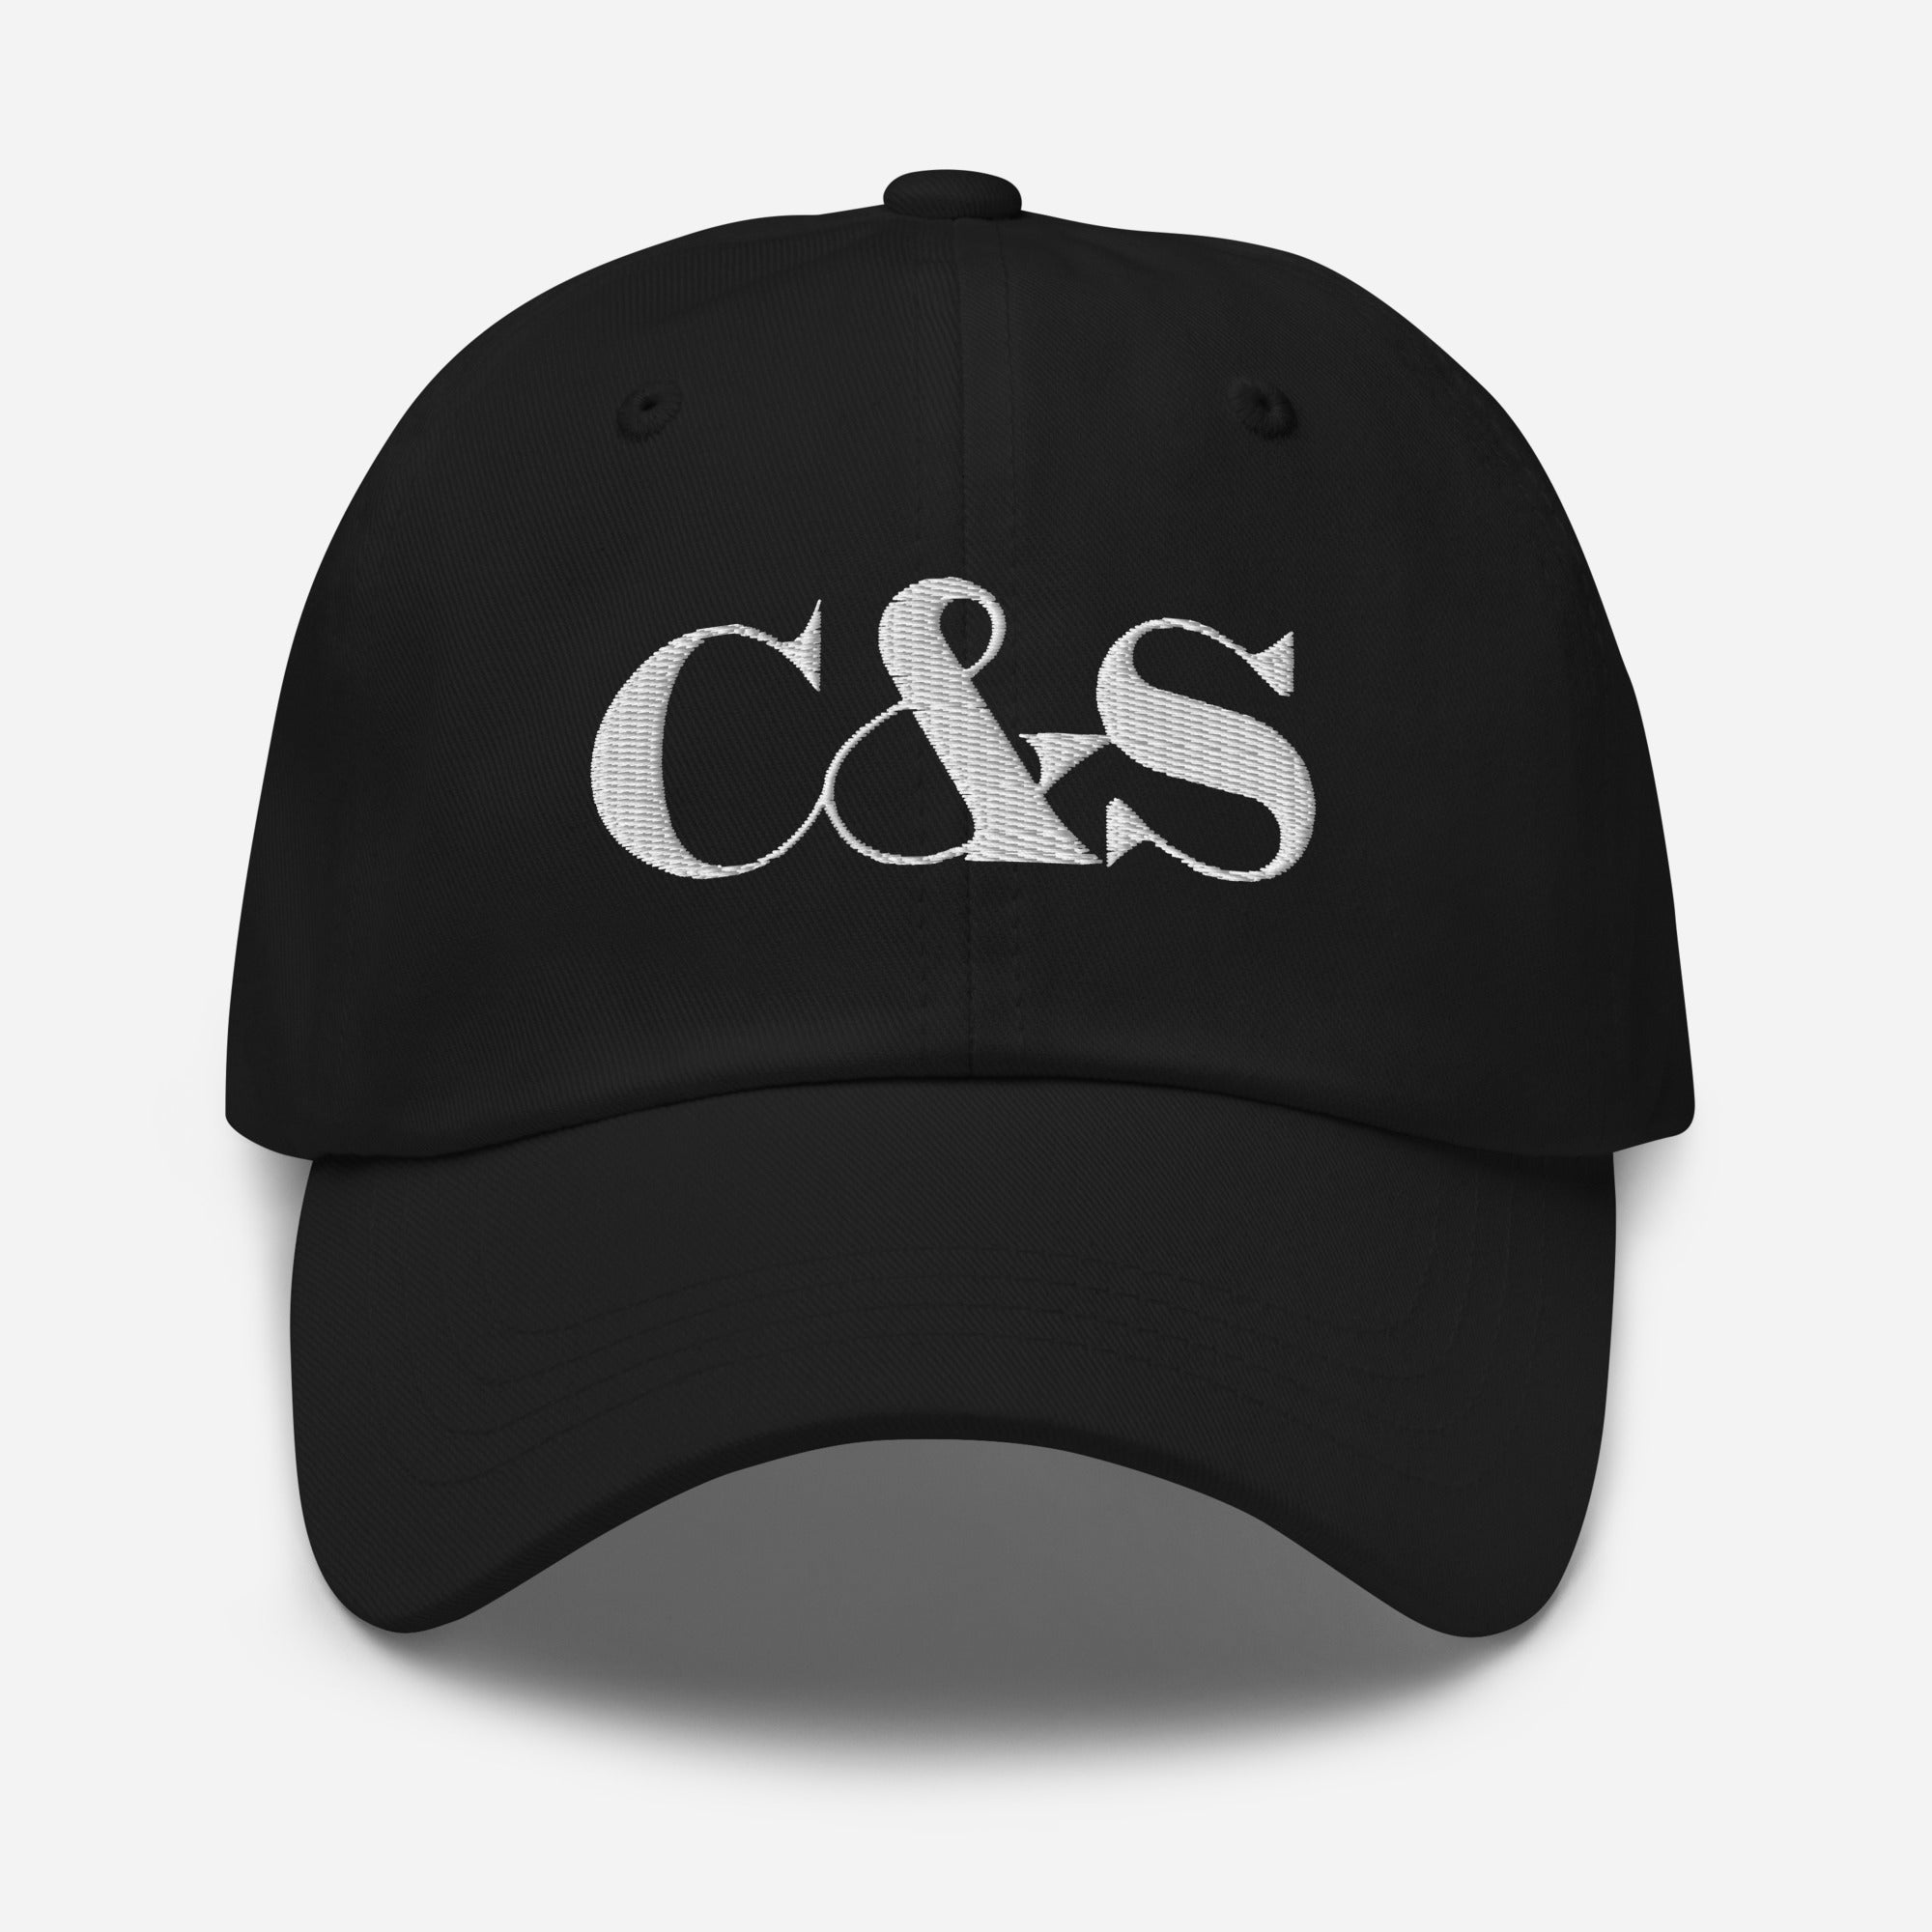 C&S Cap